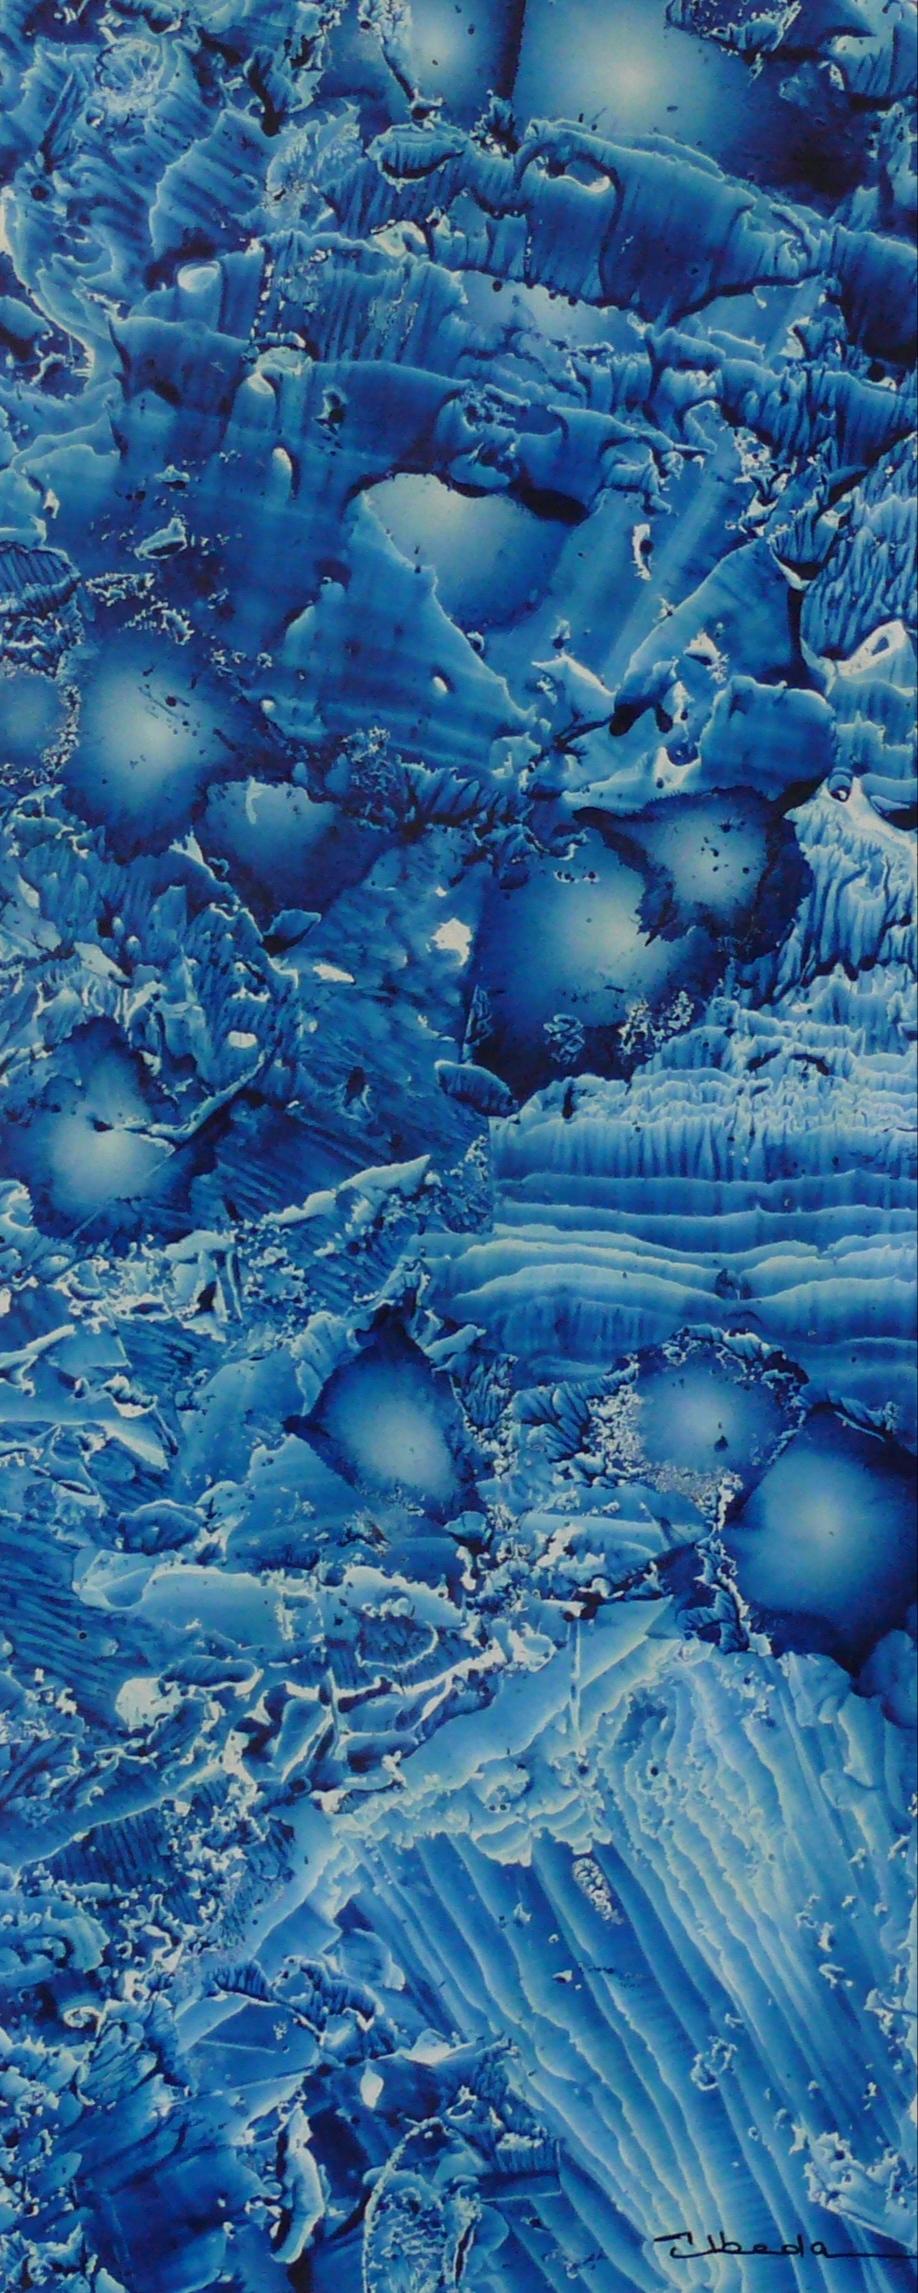 Ángel Luis Úbeda Figurative Painting - Under The Sea Series Nº 16. Úbeda. Oil fantasy blue underwater landscape. 